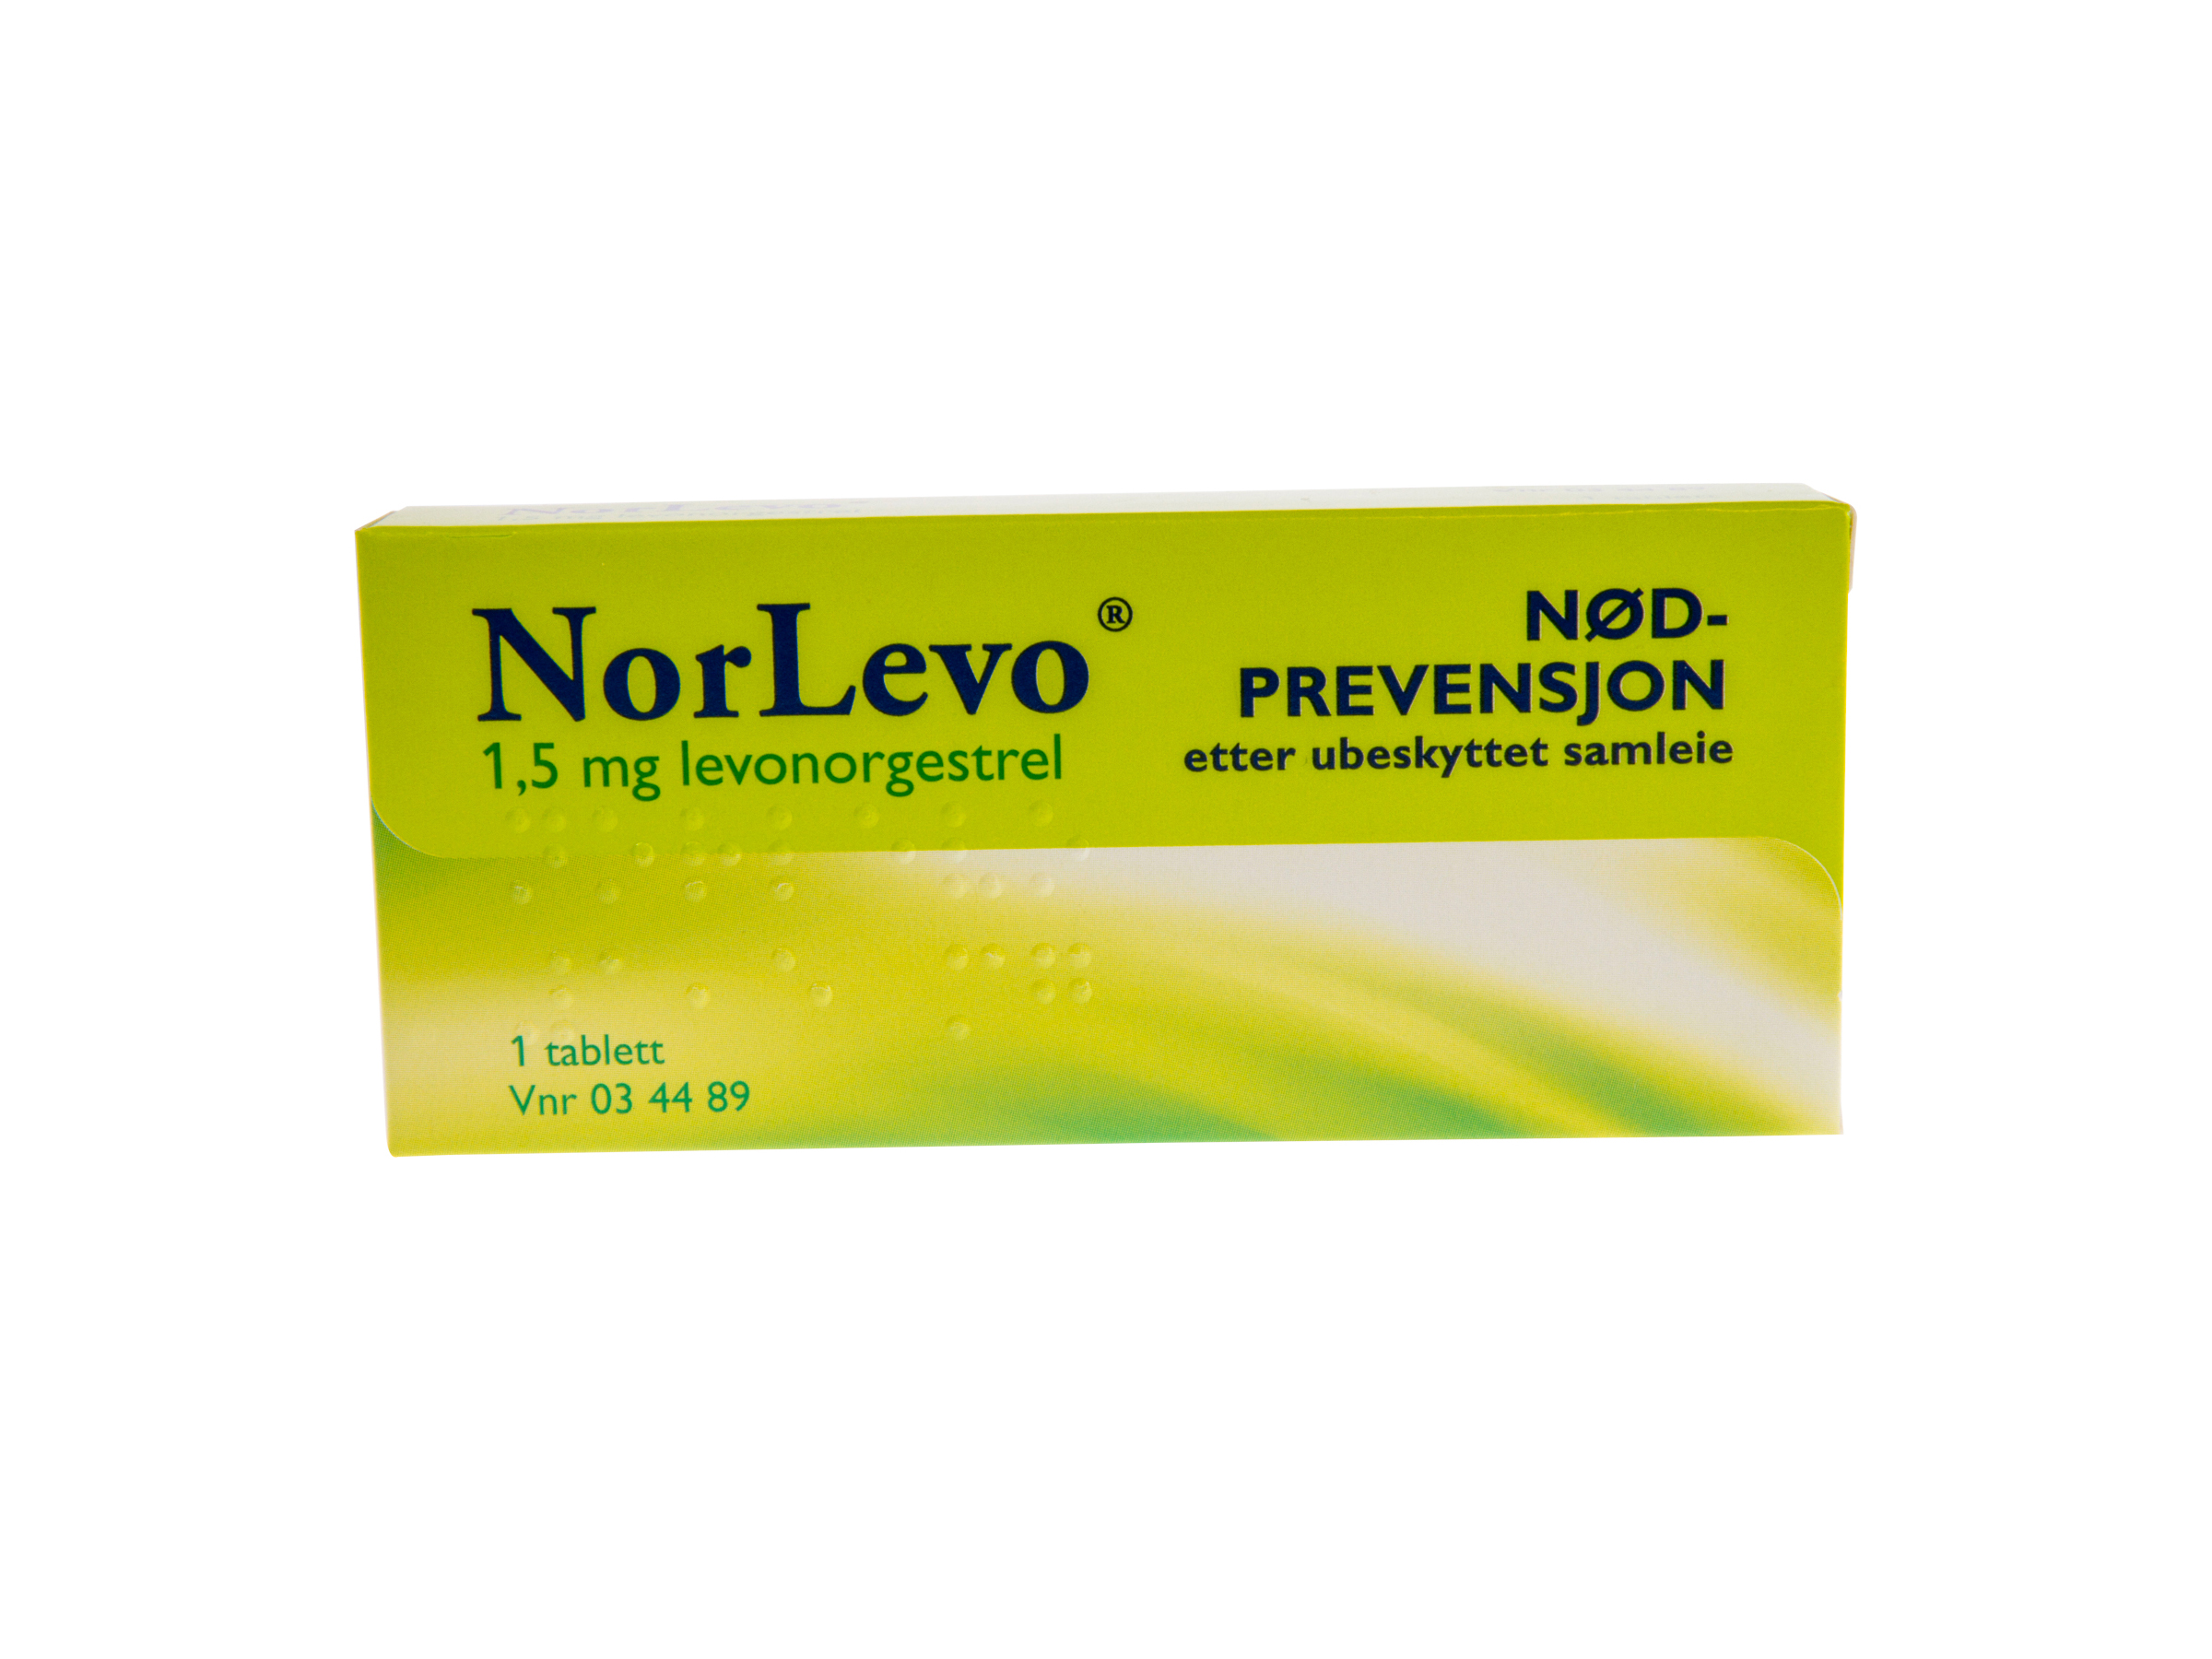 Norlevo 1,5 mg tablett, 1 stk.